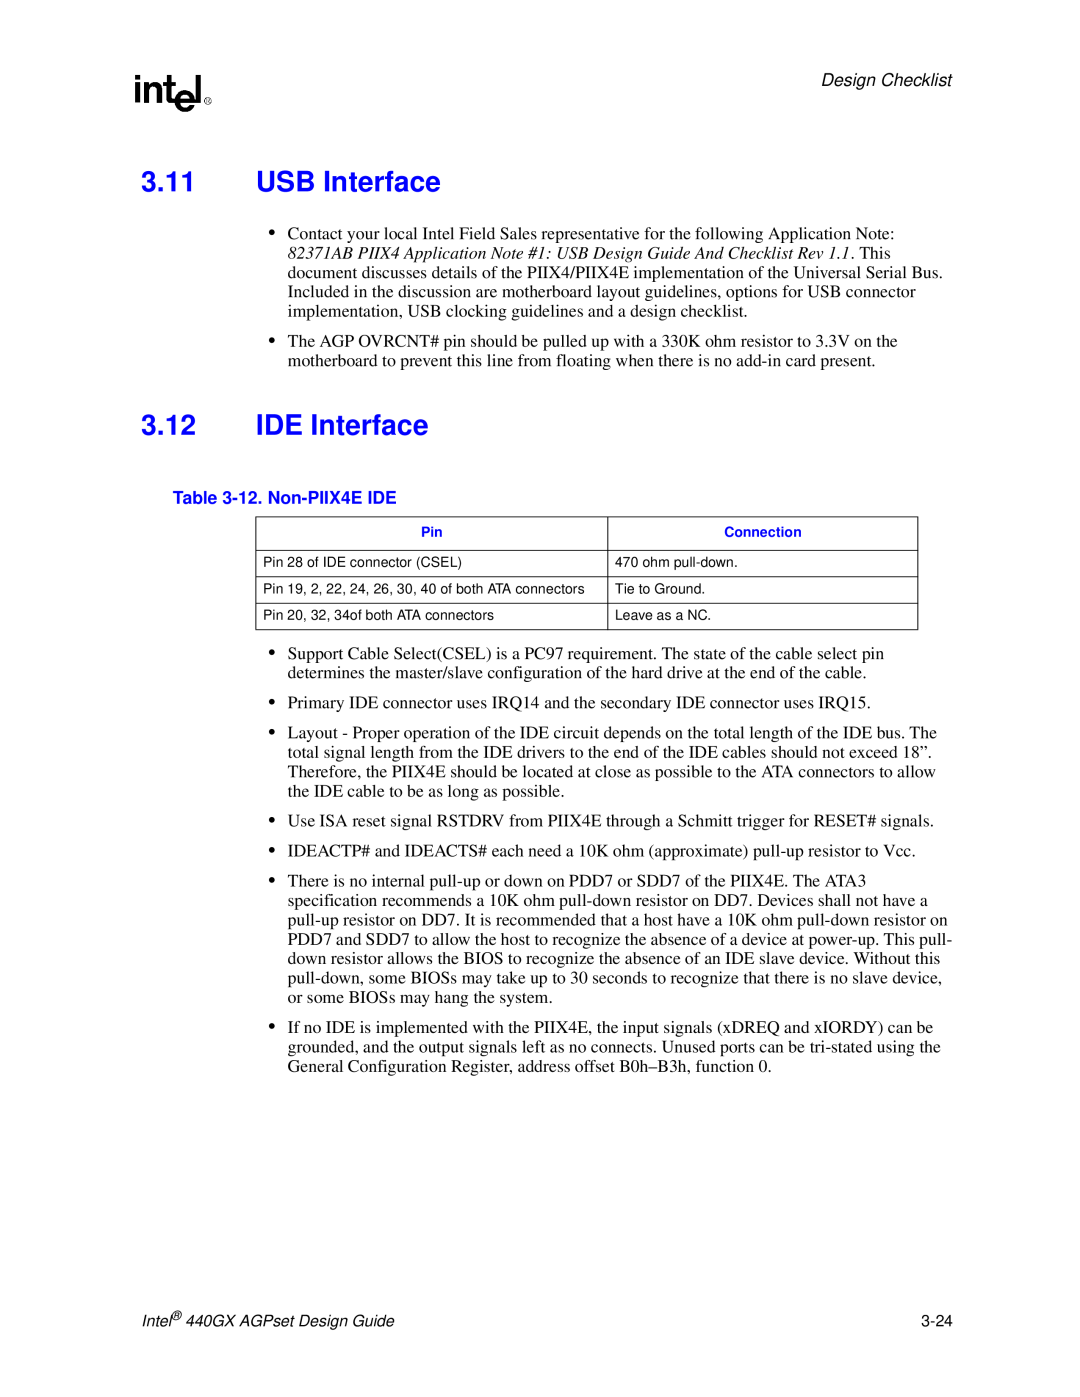 Intel 440GX manual USB Interface, IDE Interface, 12. Non-PIIX4E IDE, Design Checklist 